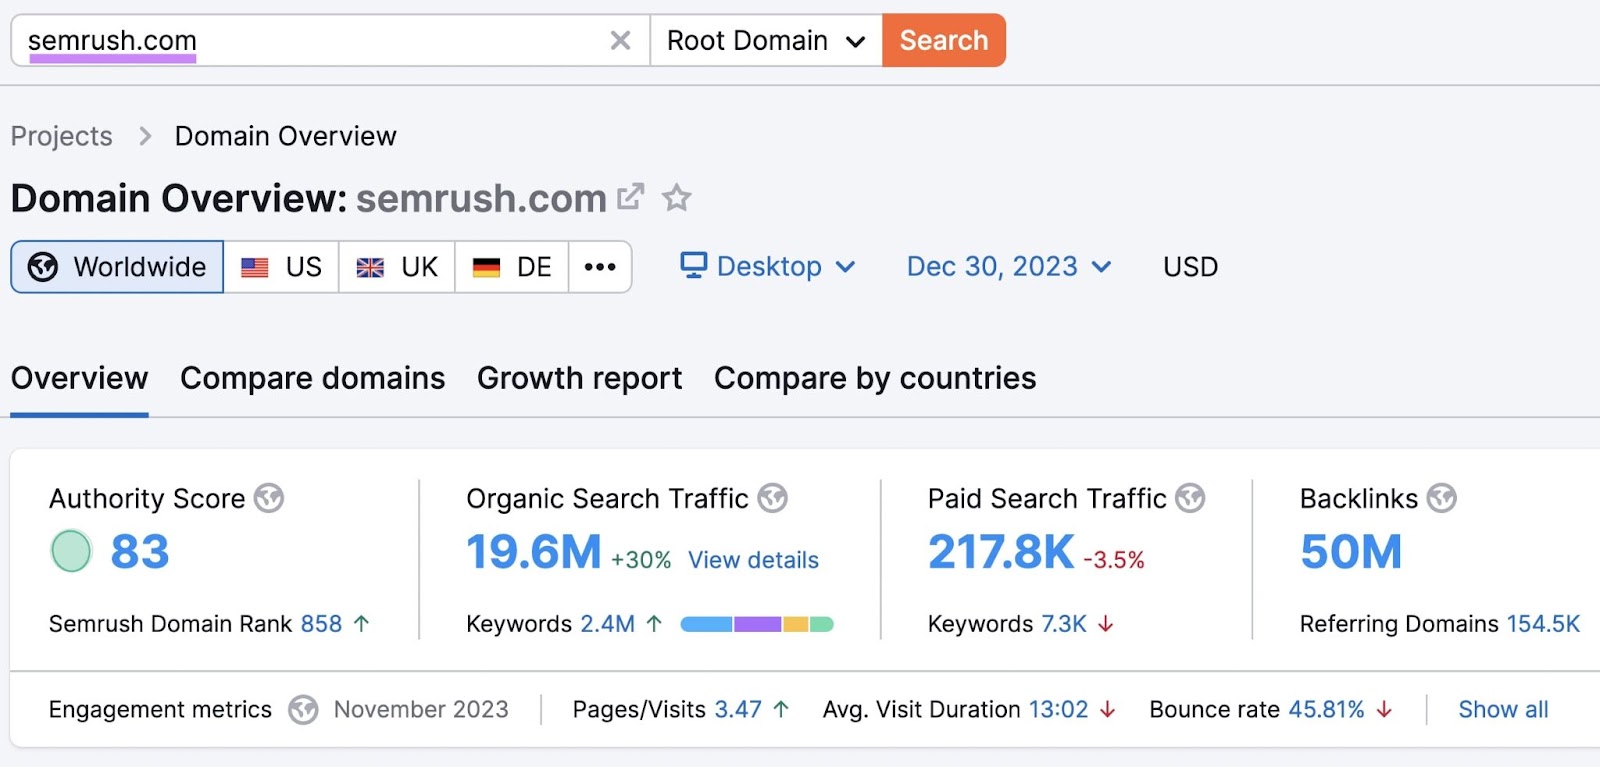 Domain Overview tool data for Semrush.com domain